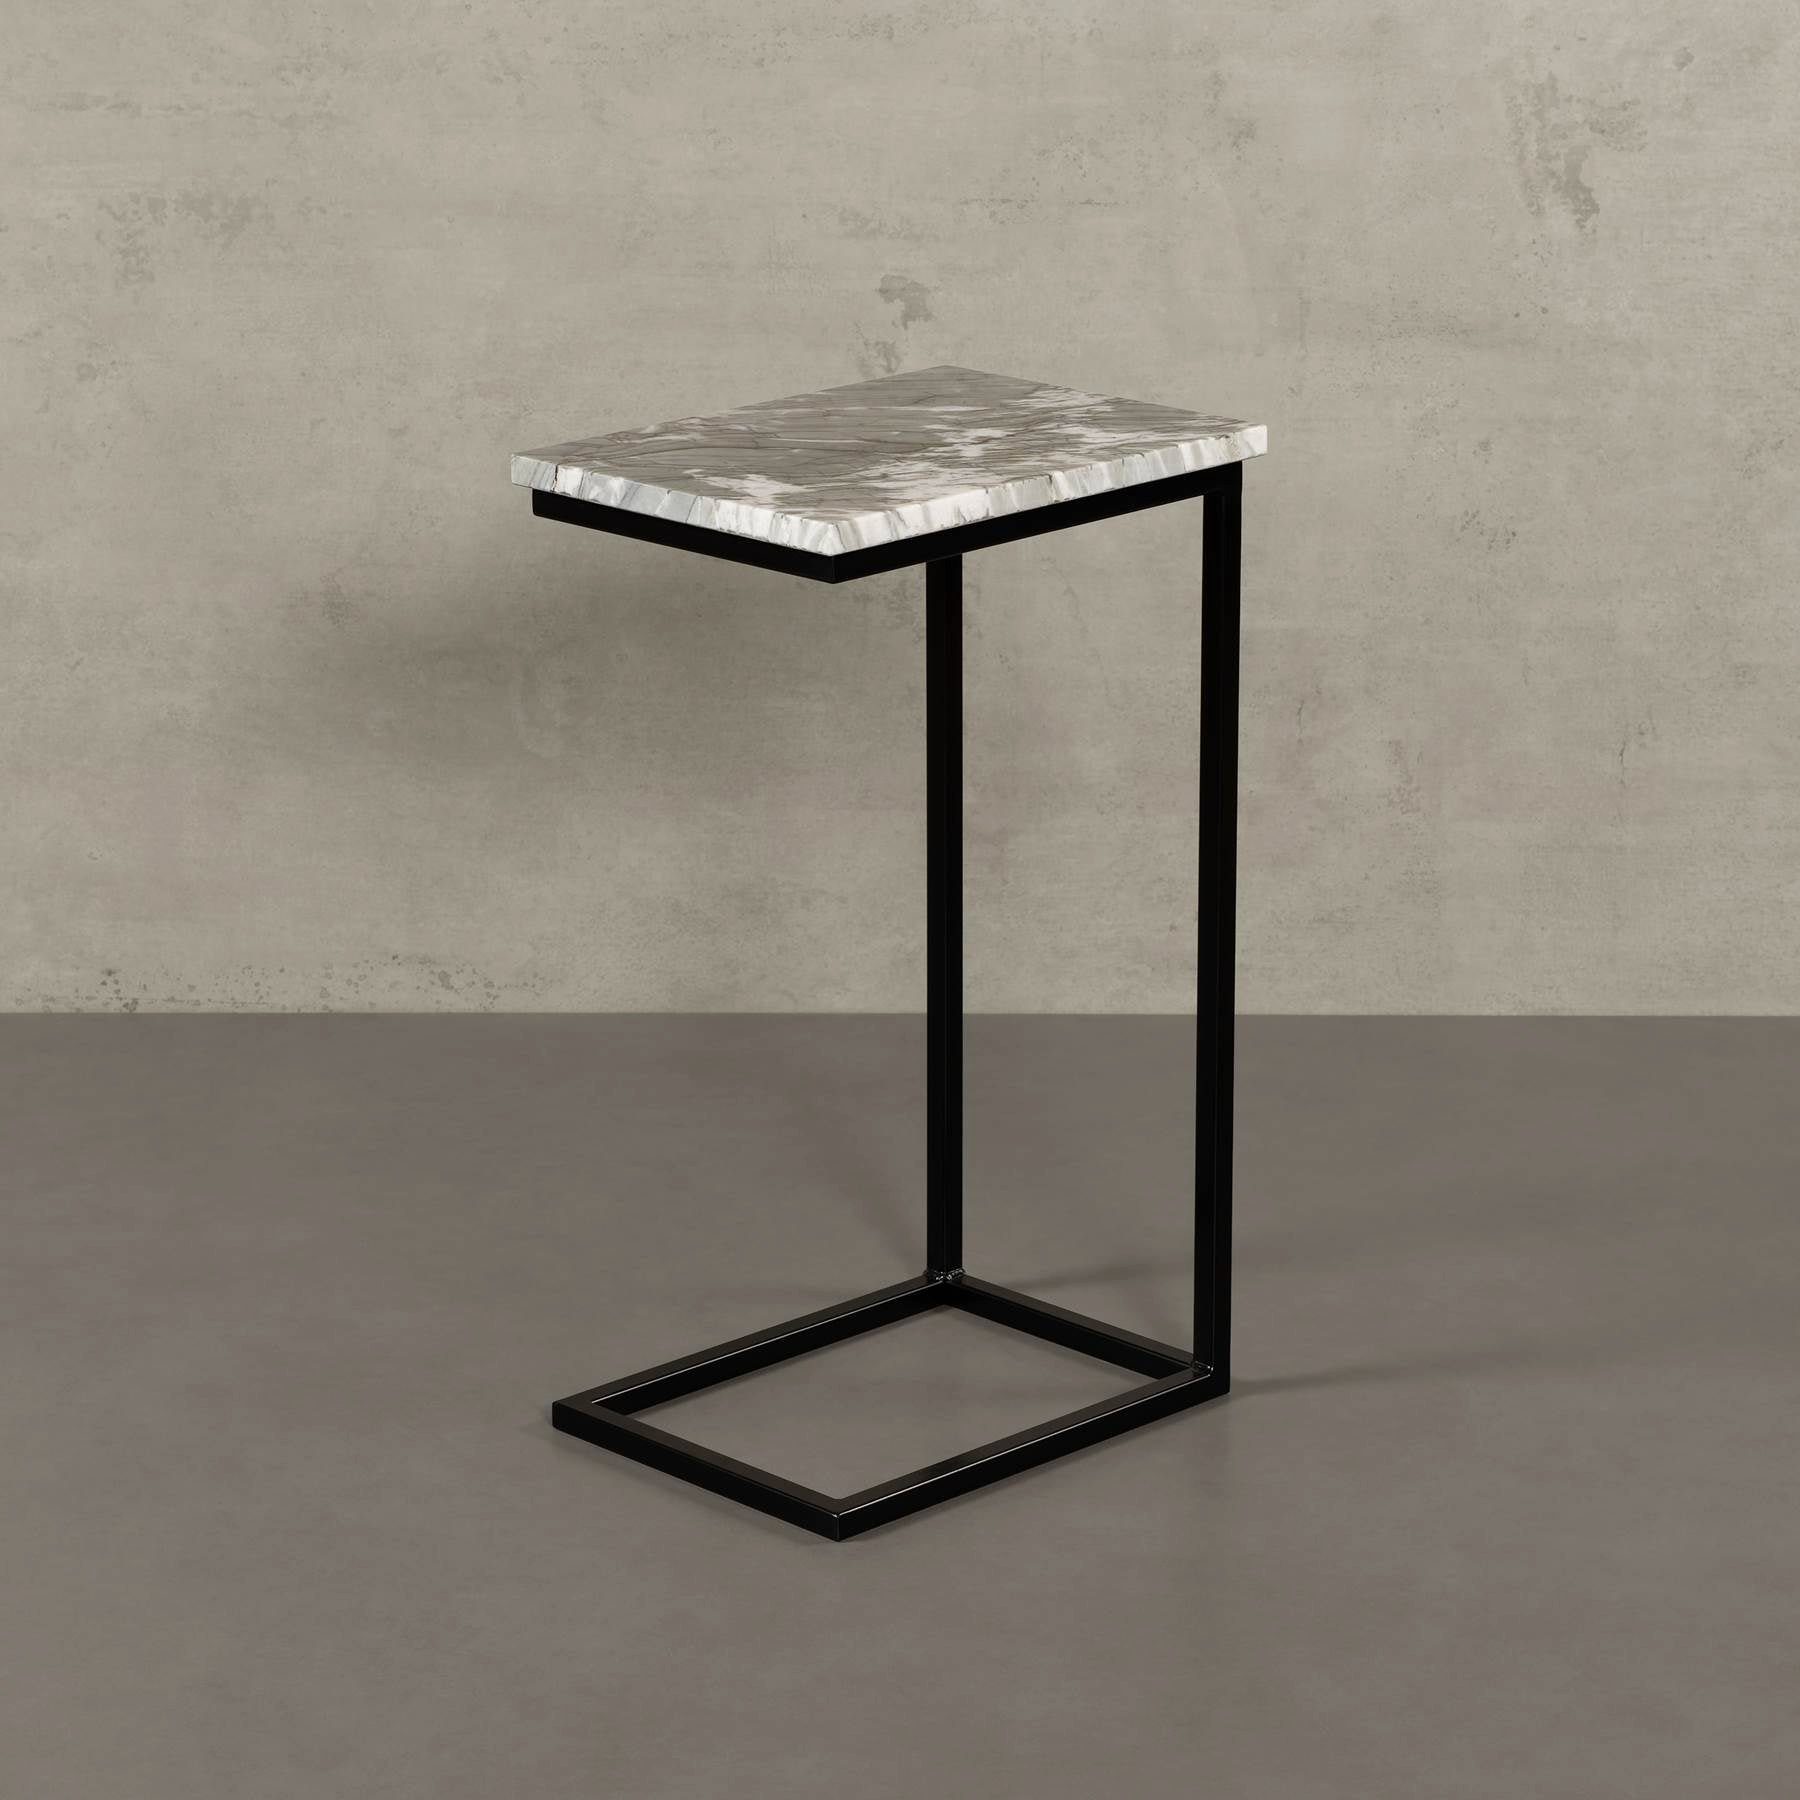 MAGNA Atelier Couchtisch STOCKHOLM mit ECHTEM MARMOR, Wohnzimmer Tisch eckig, Laptoptisch, schwarz Metallgestell, 40x30x68cm Venom